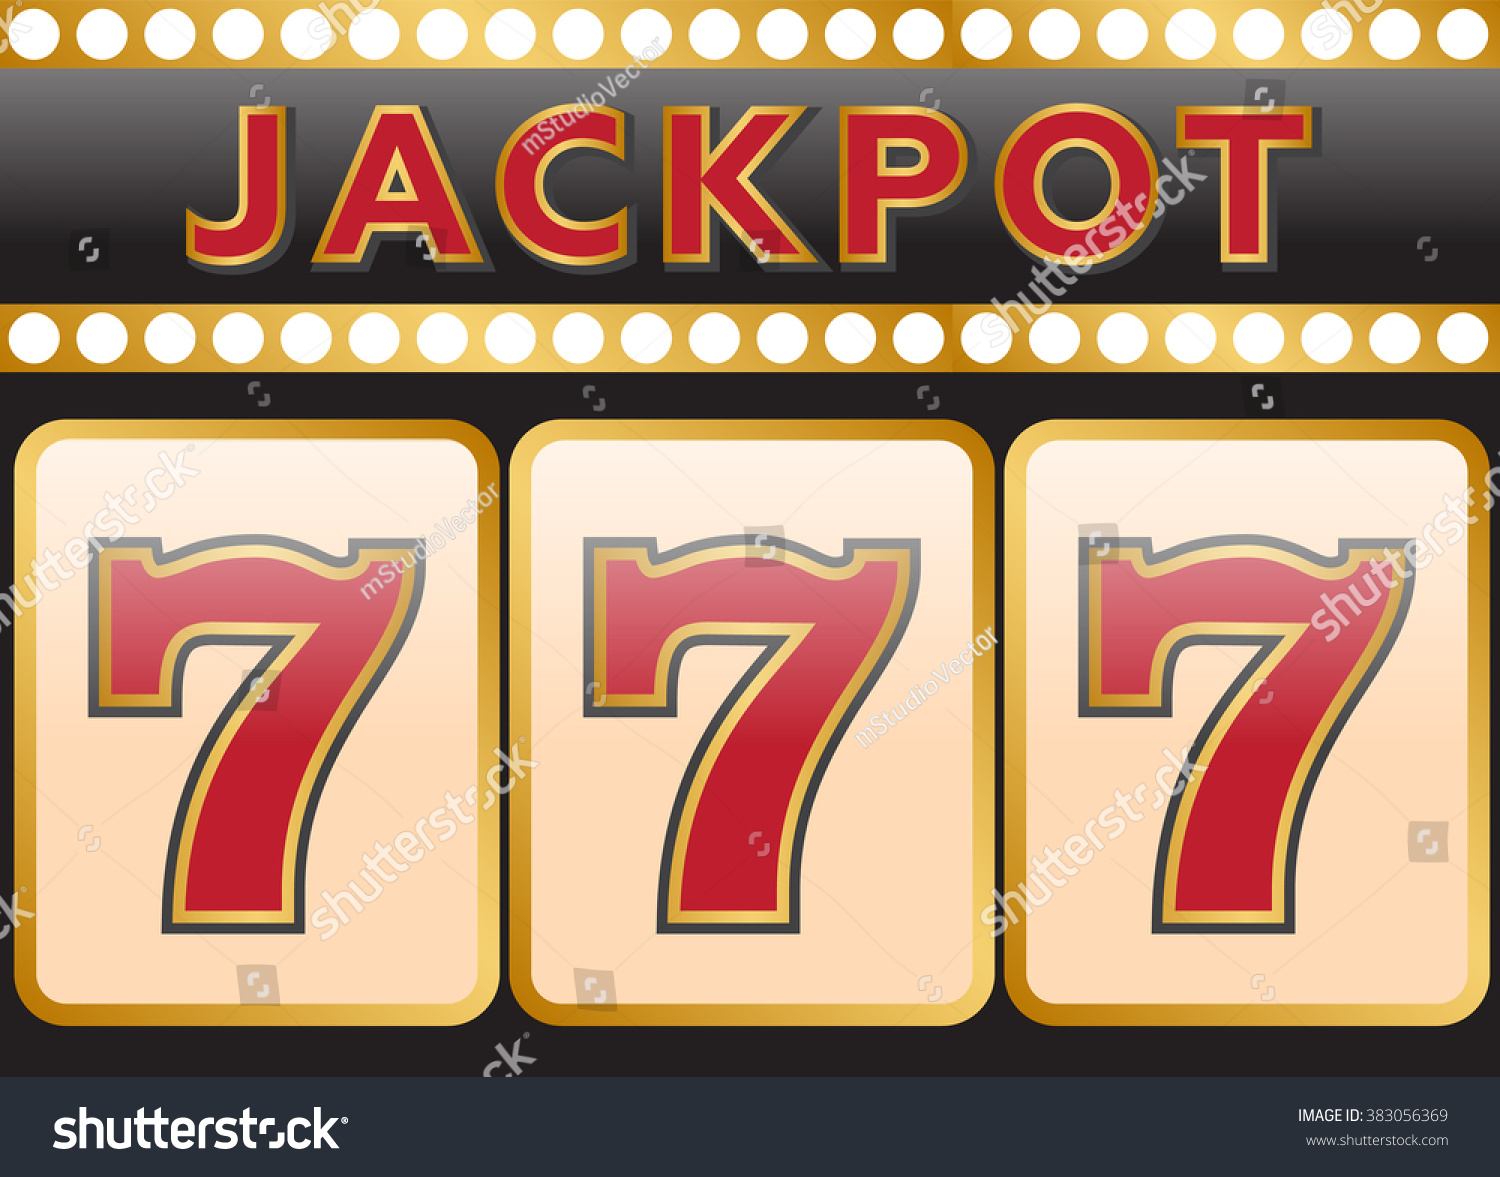 Lucky Seven Jackpot Stock Photo 383056369 : Shutterstock